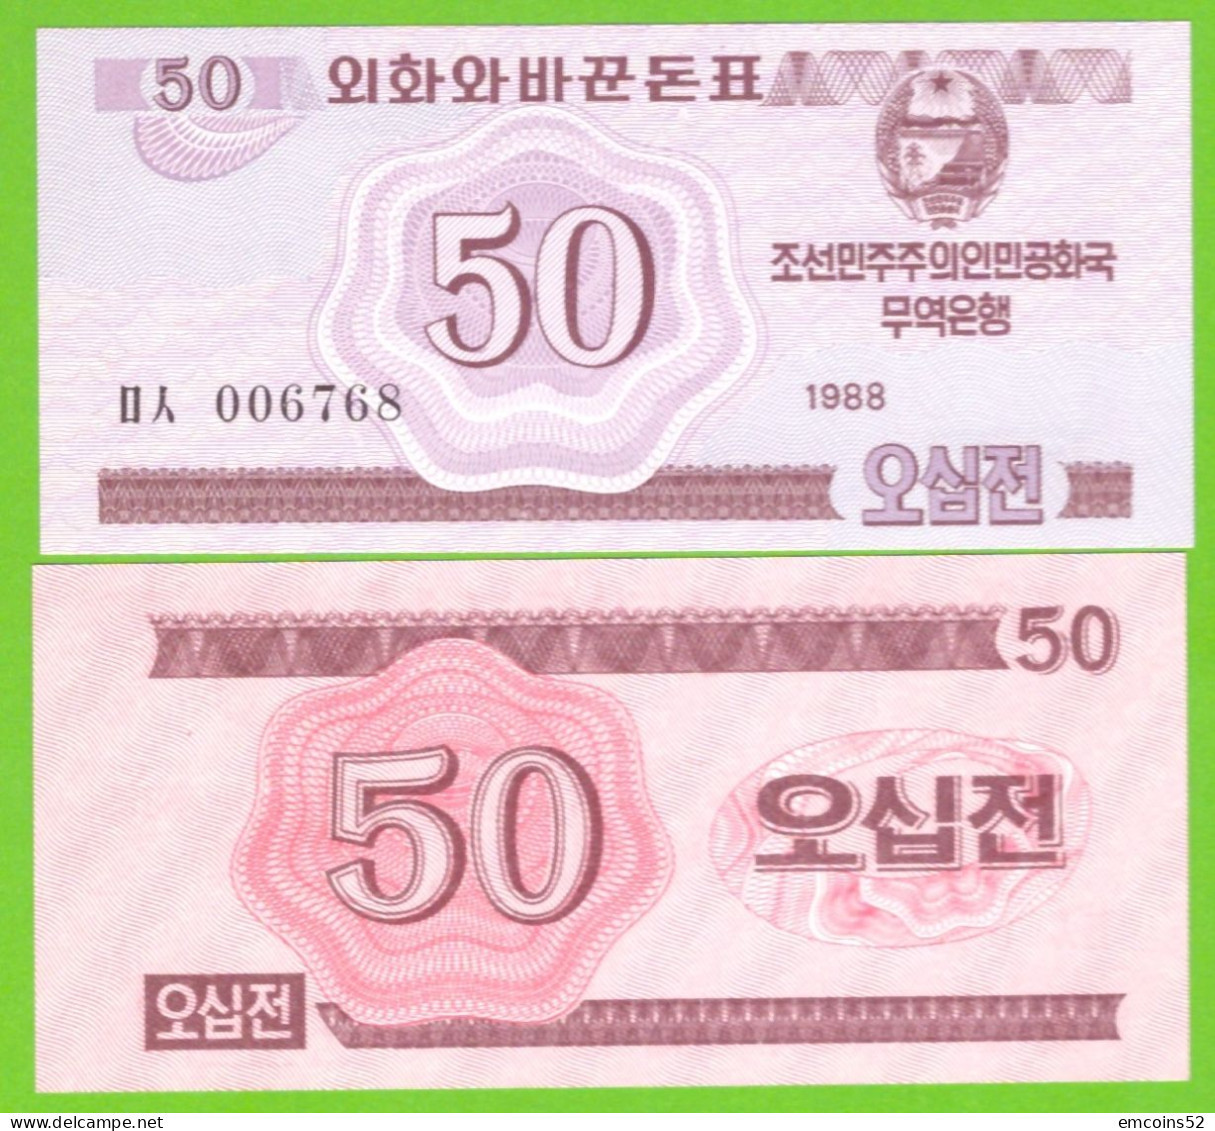 KOREA NORTH 50 CHON 1988 P-34 UNC - Korea, Noord